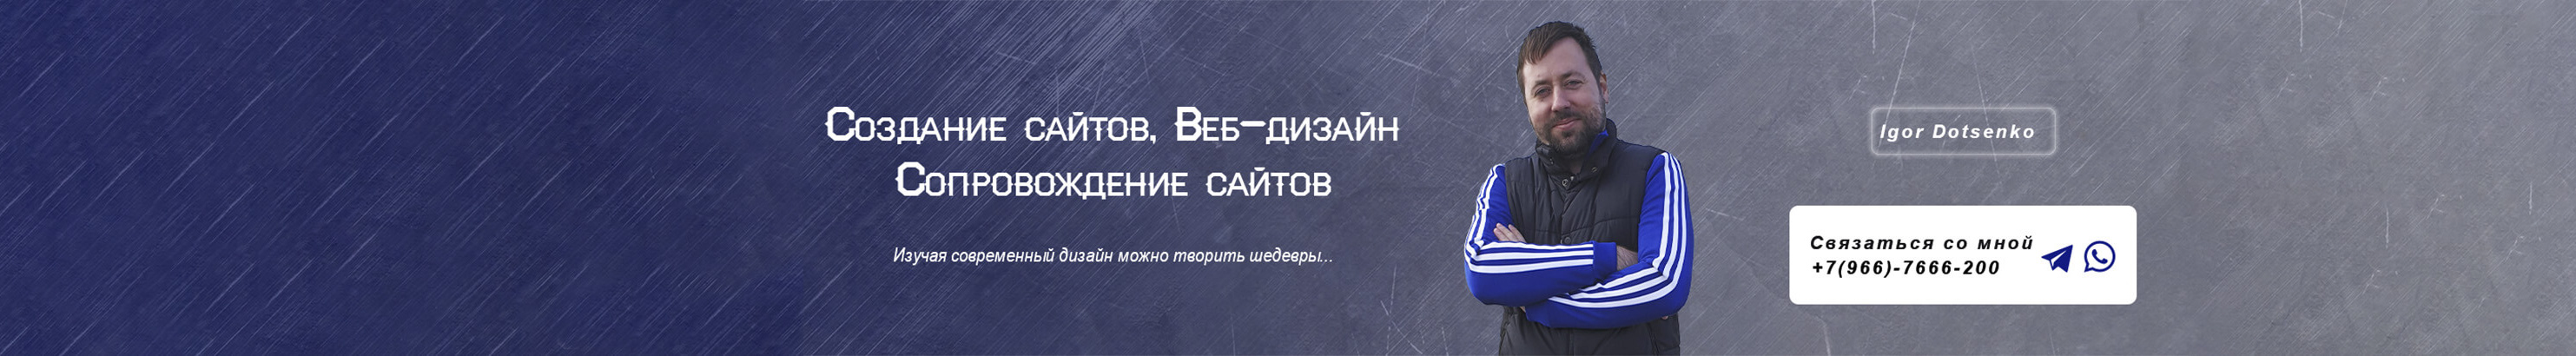 Игорь Доценко's profile banner